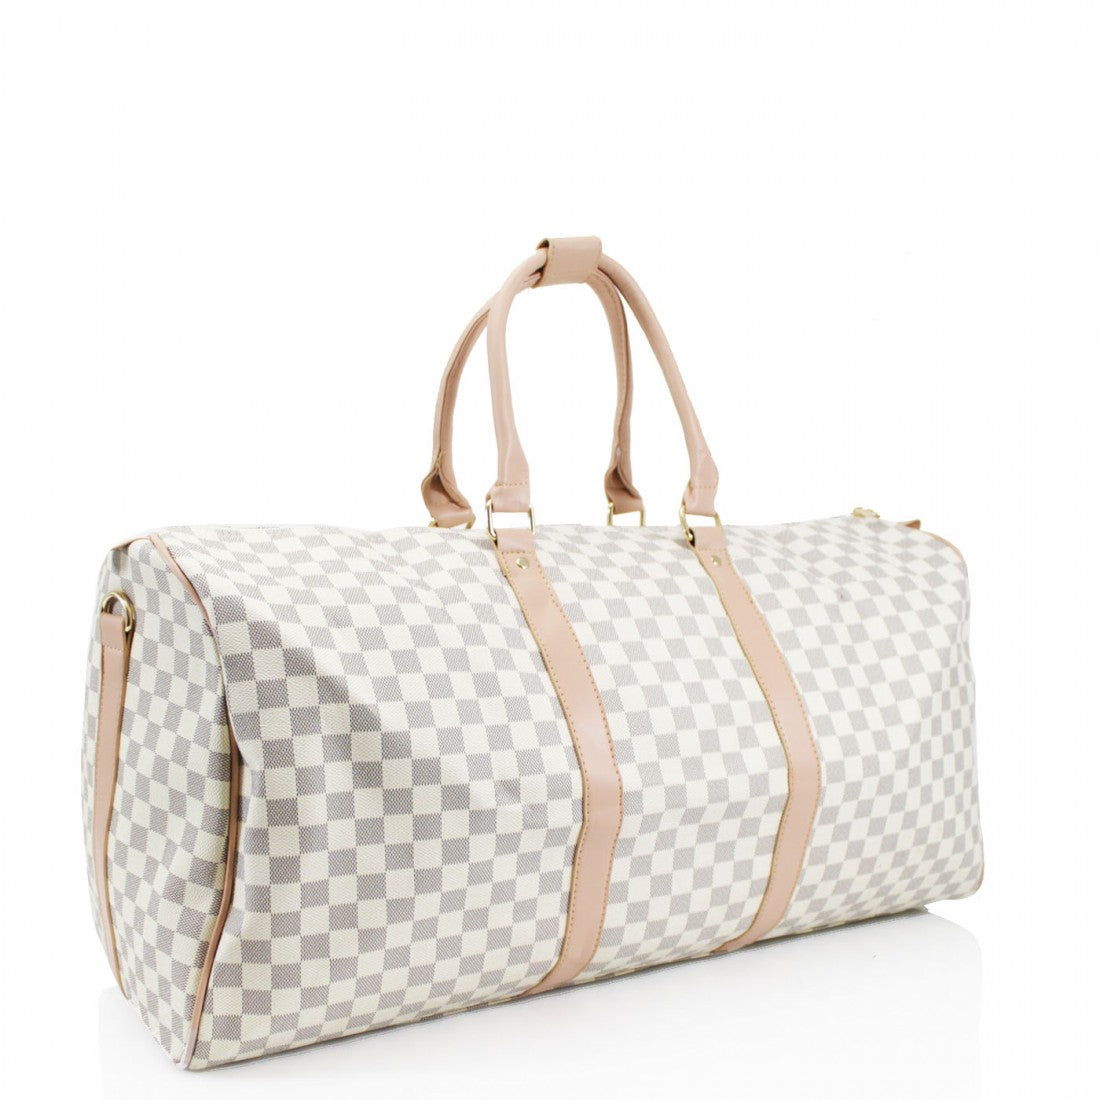 Louis Vuitton Duffle Bag -  UK